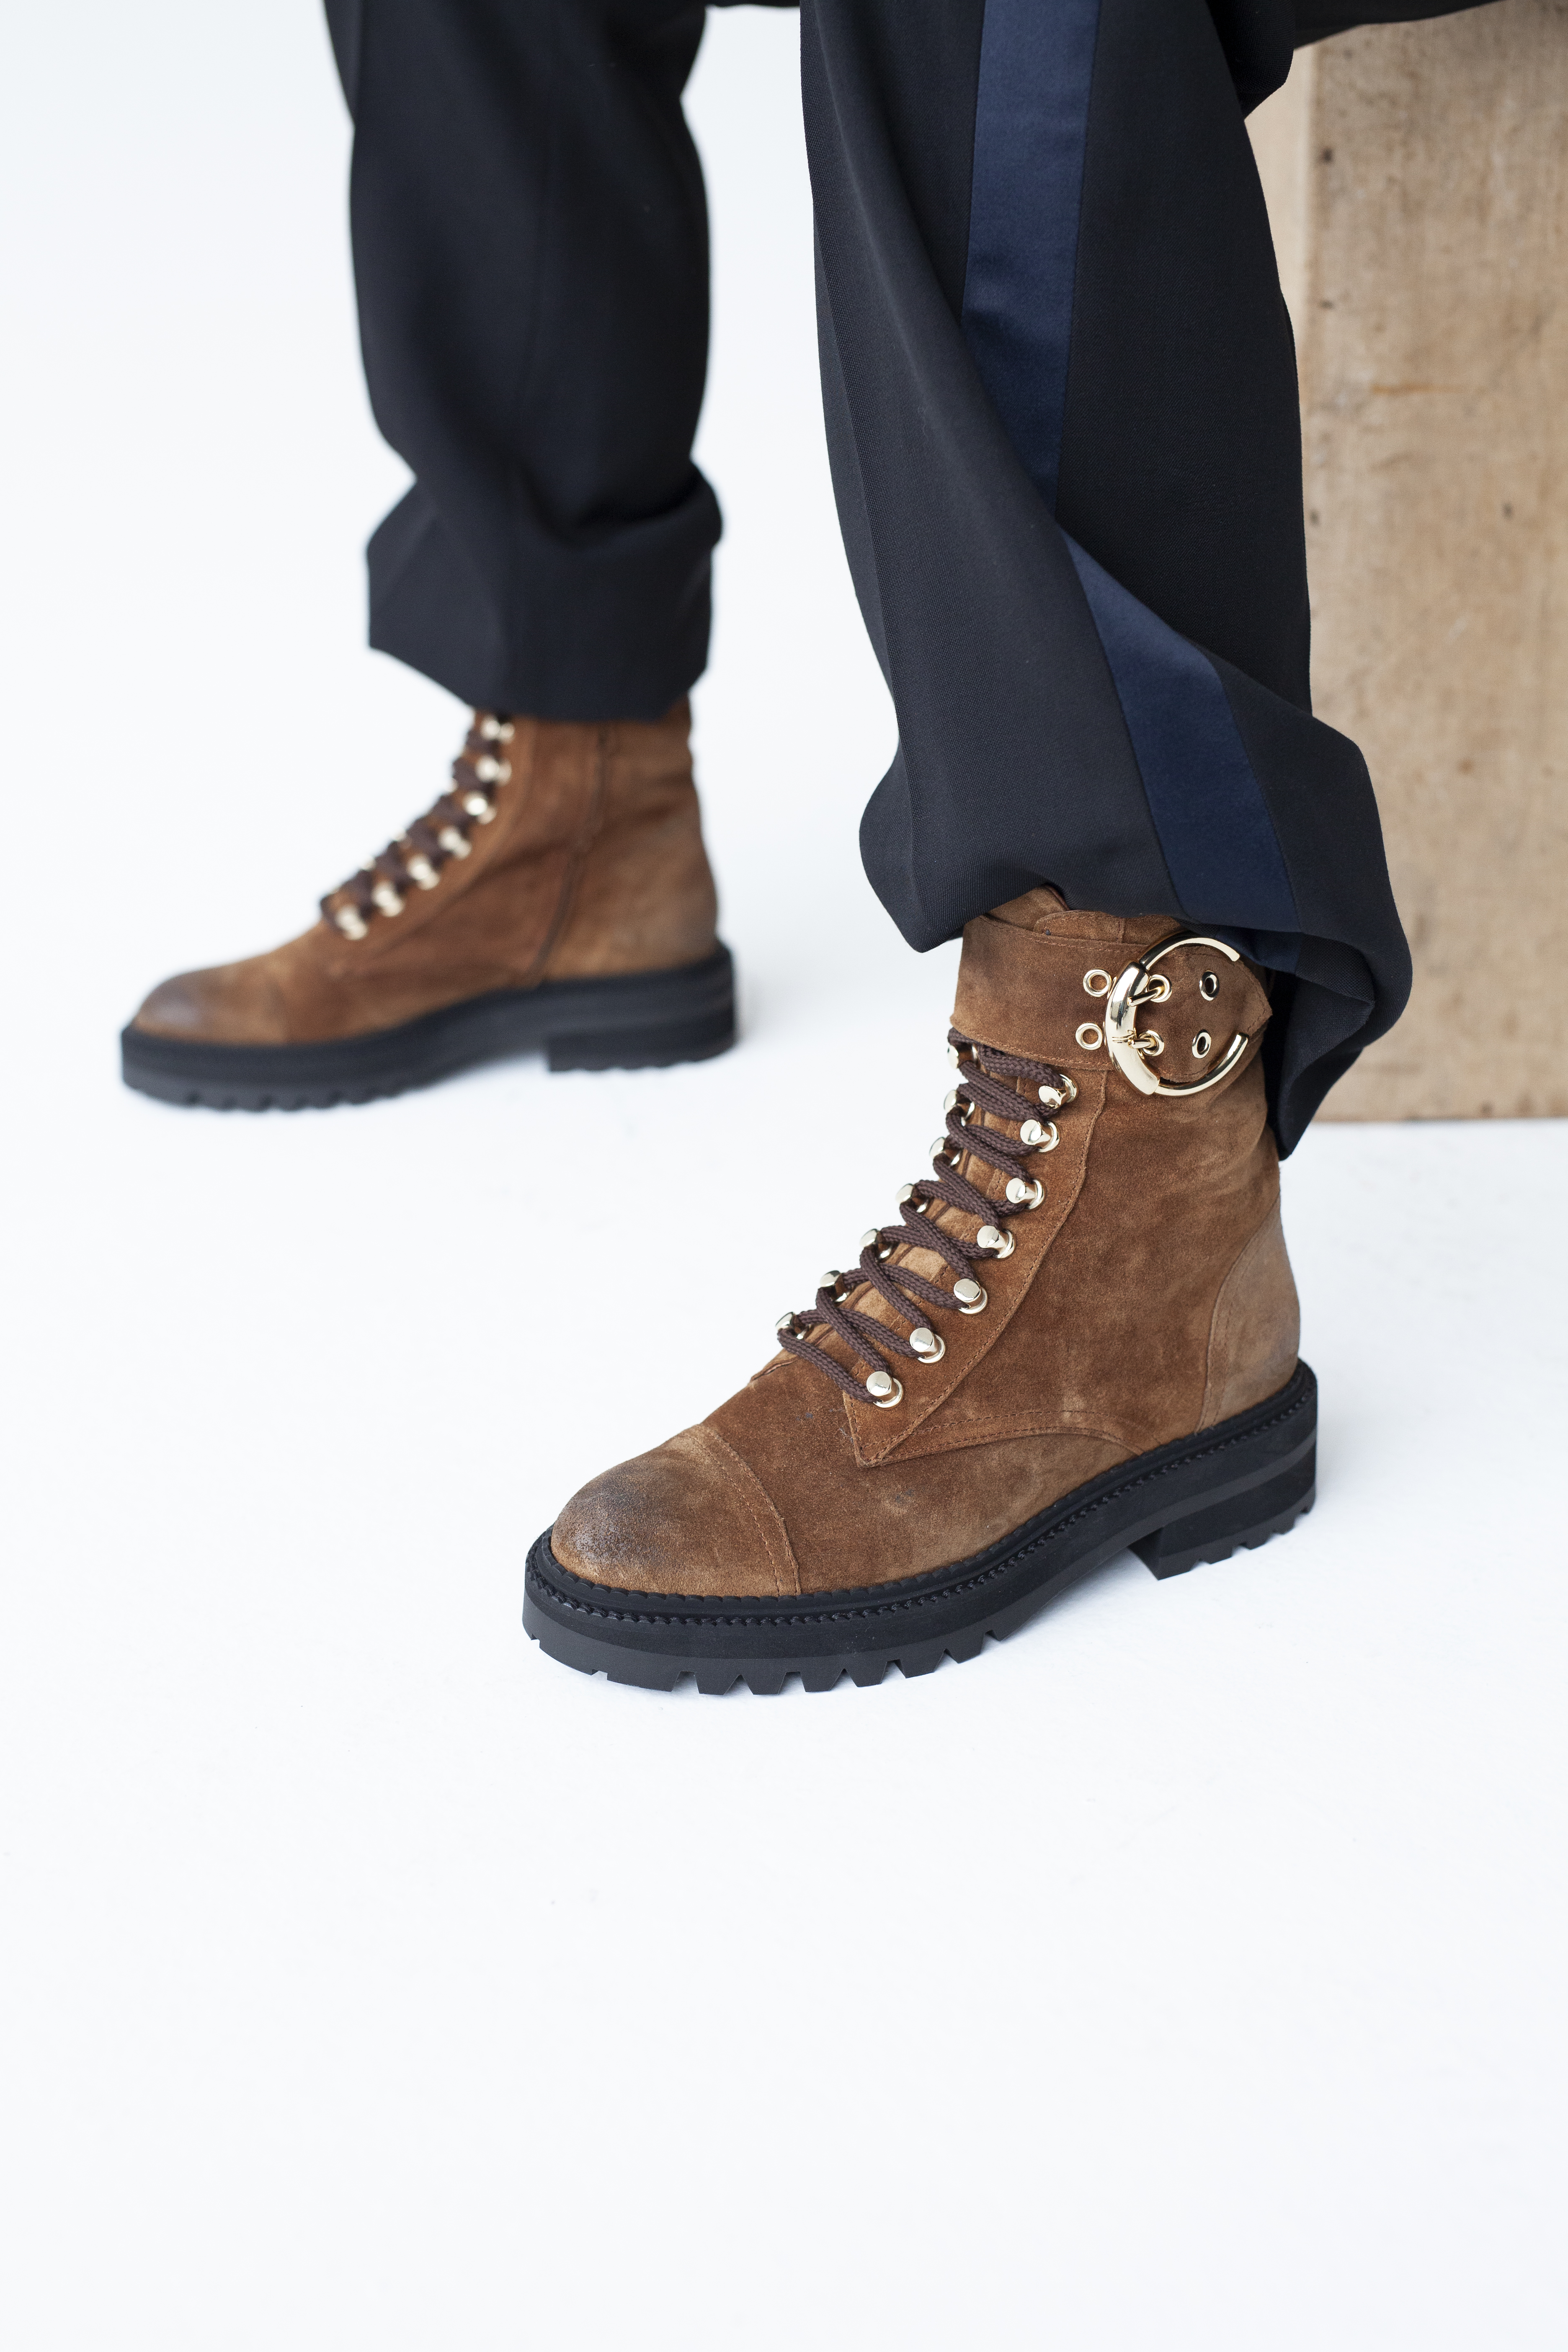 billi bi winter boots